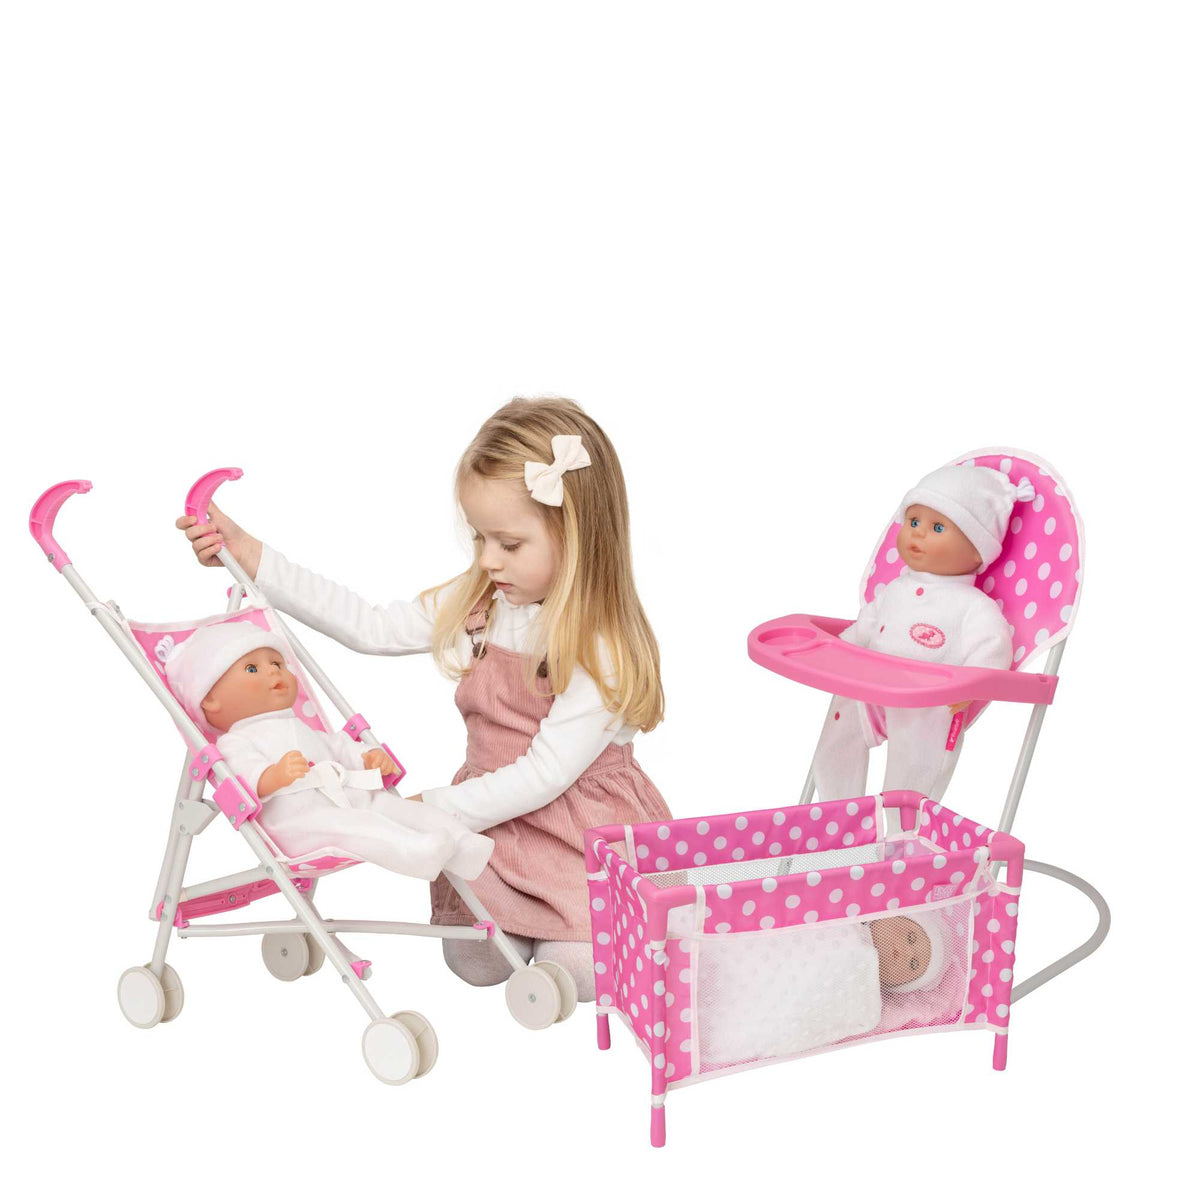 Childrens Dolls Pram, Childrens Dolls, Dolls Accessories, Dolly Tots, Nursery Play Set, Dolls Stroller, Dolls High Chair, Dolls Rocking Crib, Dolls Car Seat